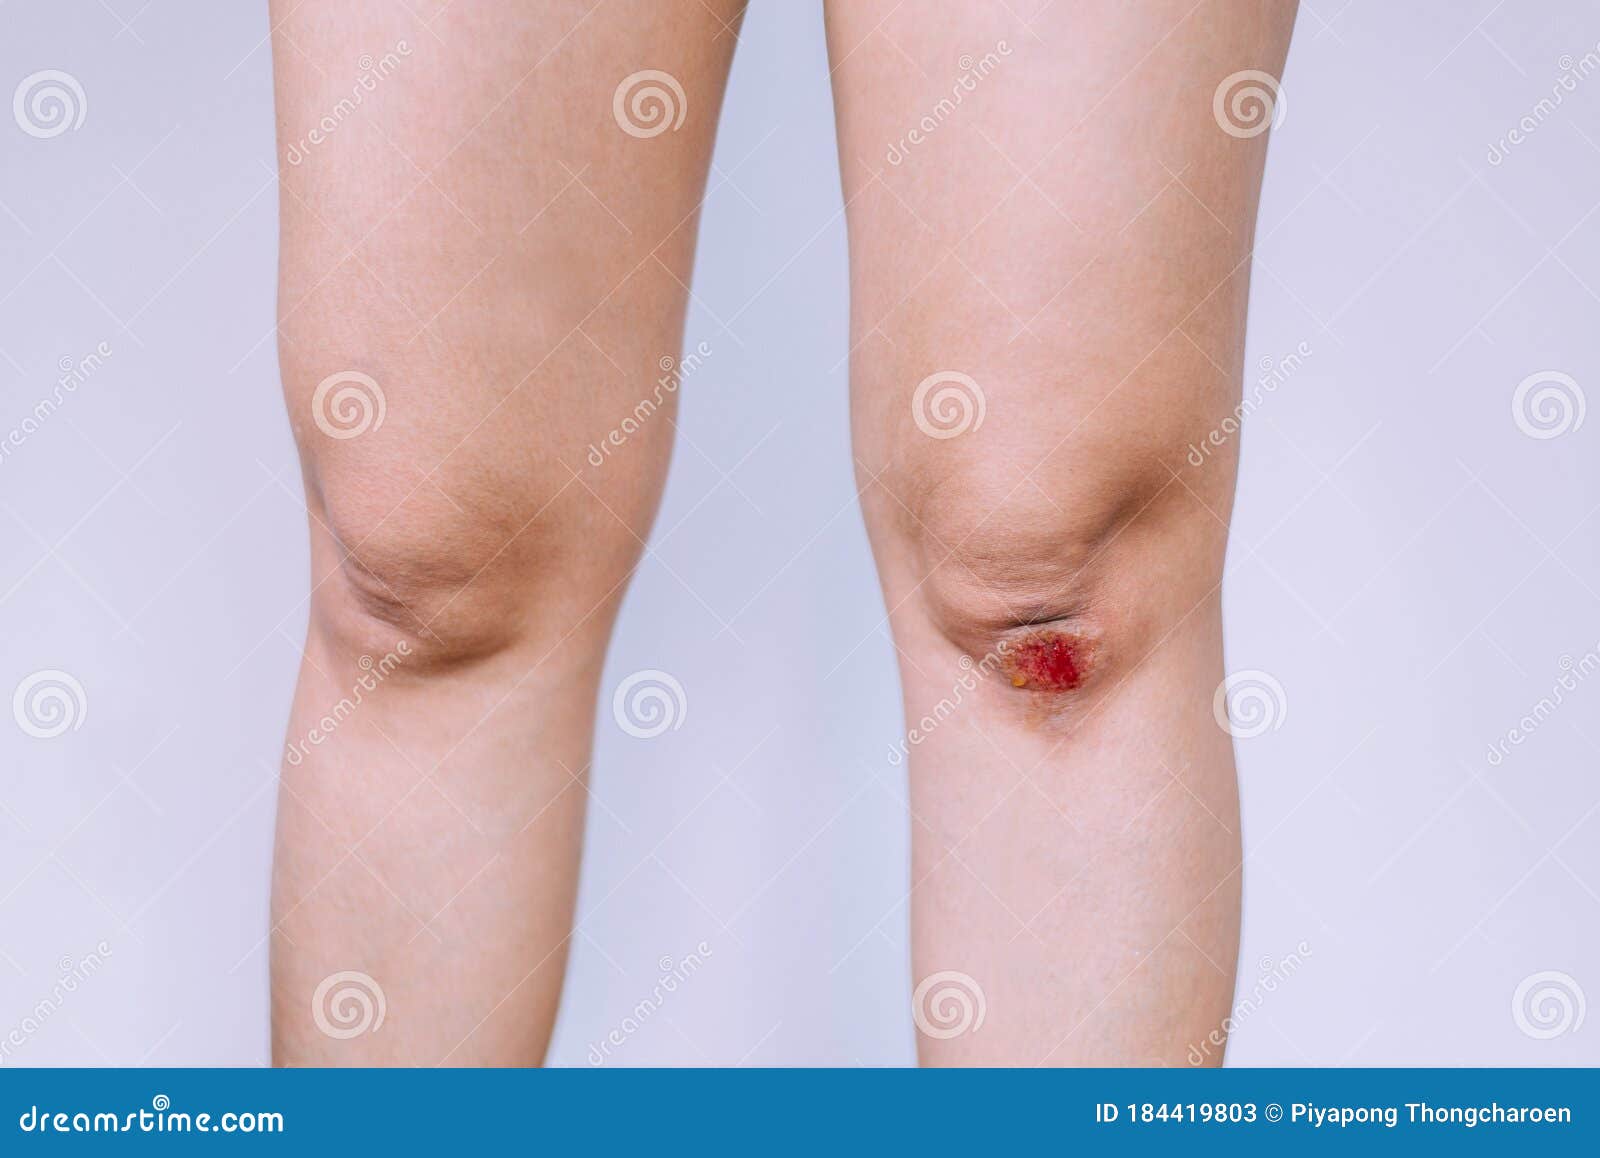 Amortirea mainilor sau picioarelor: cauze, simptome, tratament, unguent pentru picioare amortite